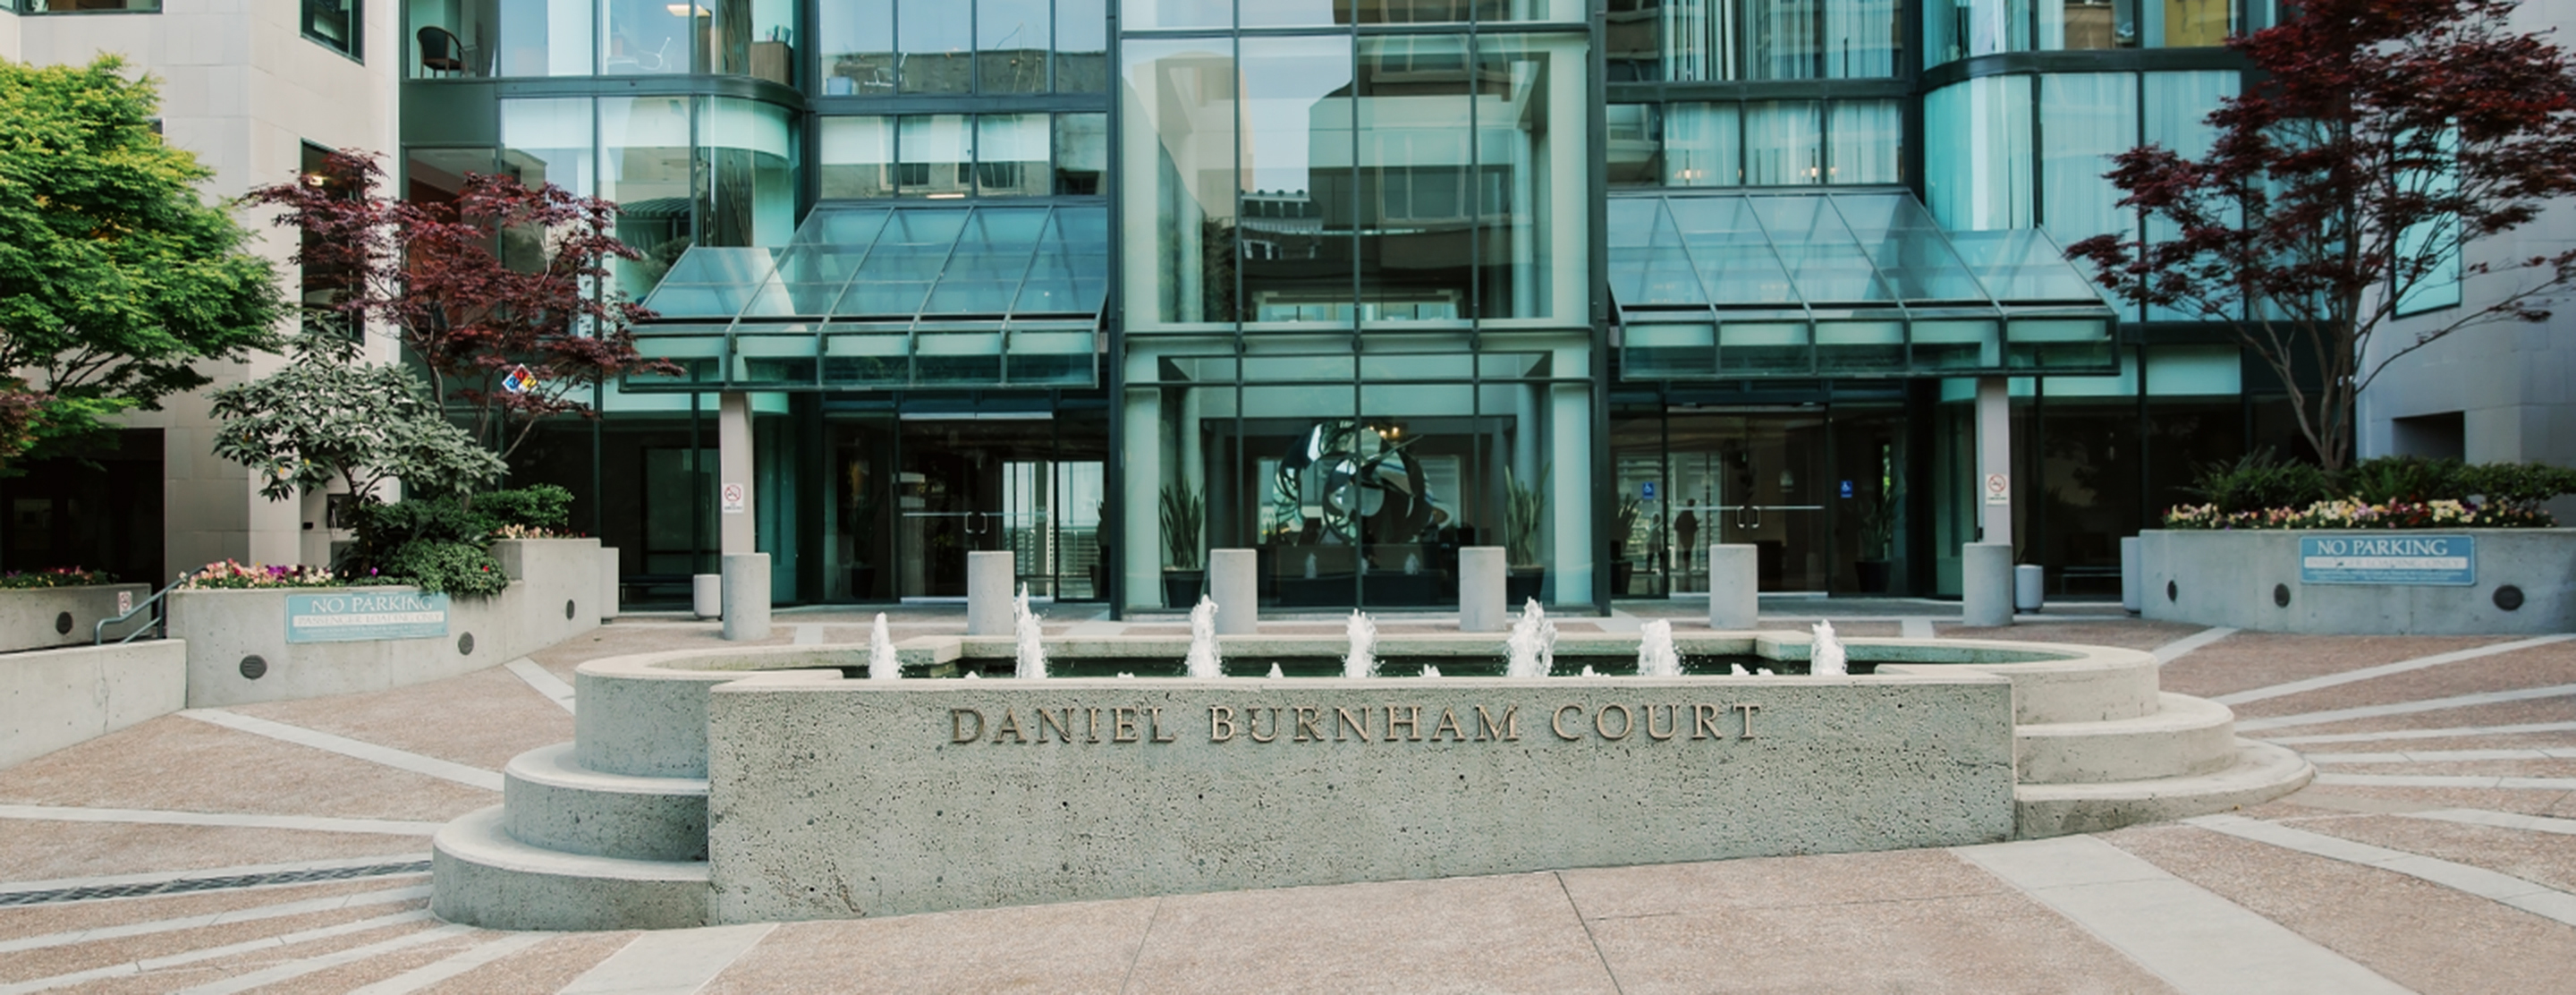 Daniel Burnham Court building entrance